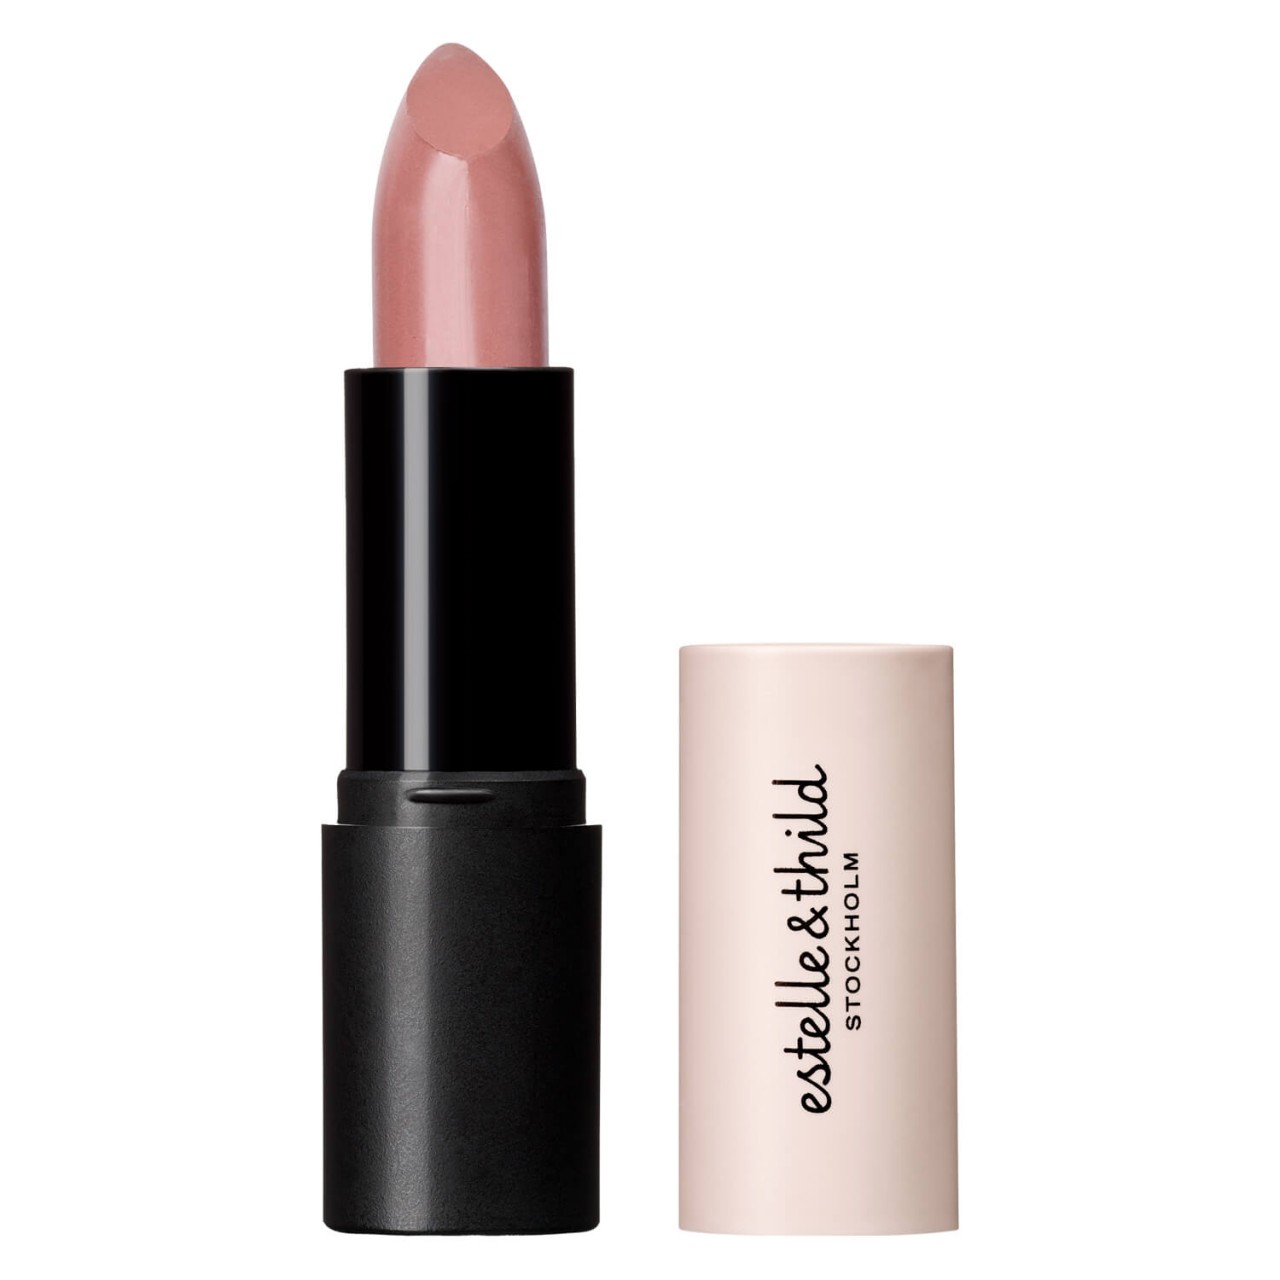 Estelle&Thild Make-Up - Cream Lipstick Cashmere von Estelle&Thild